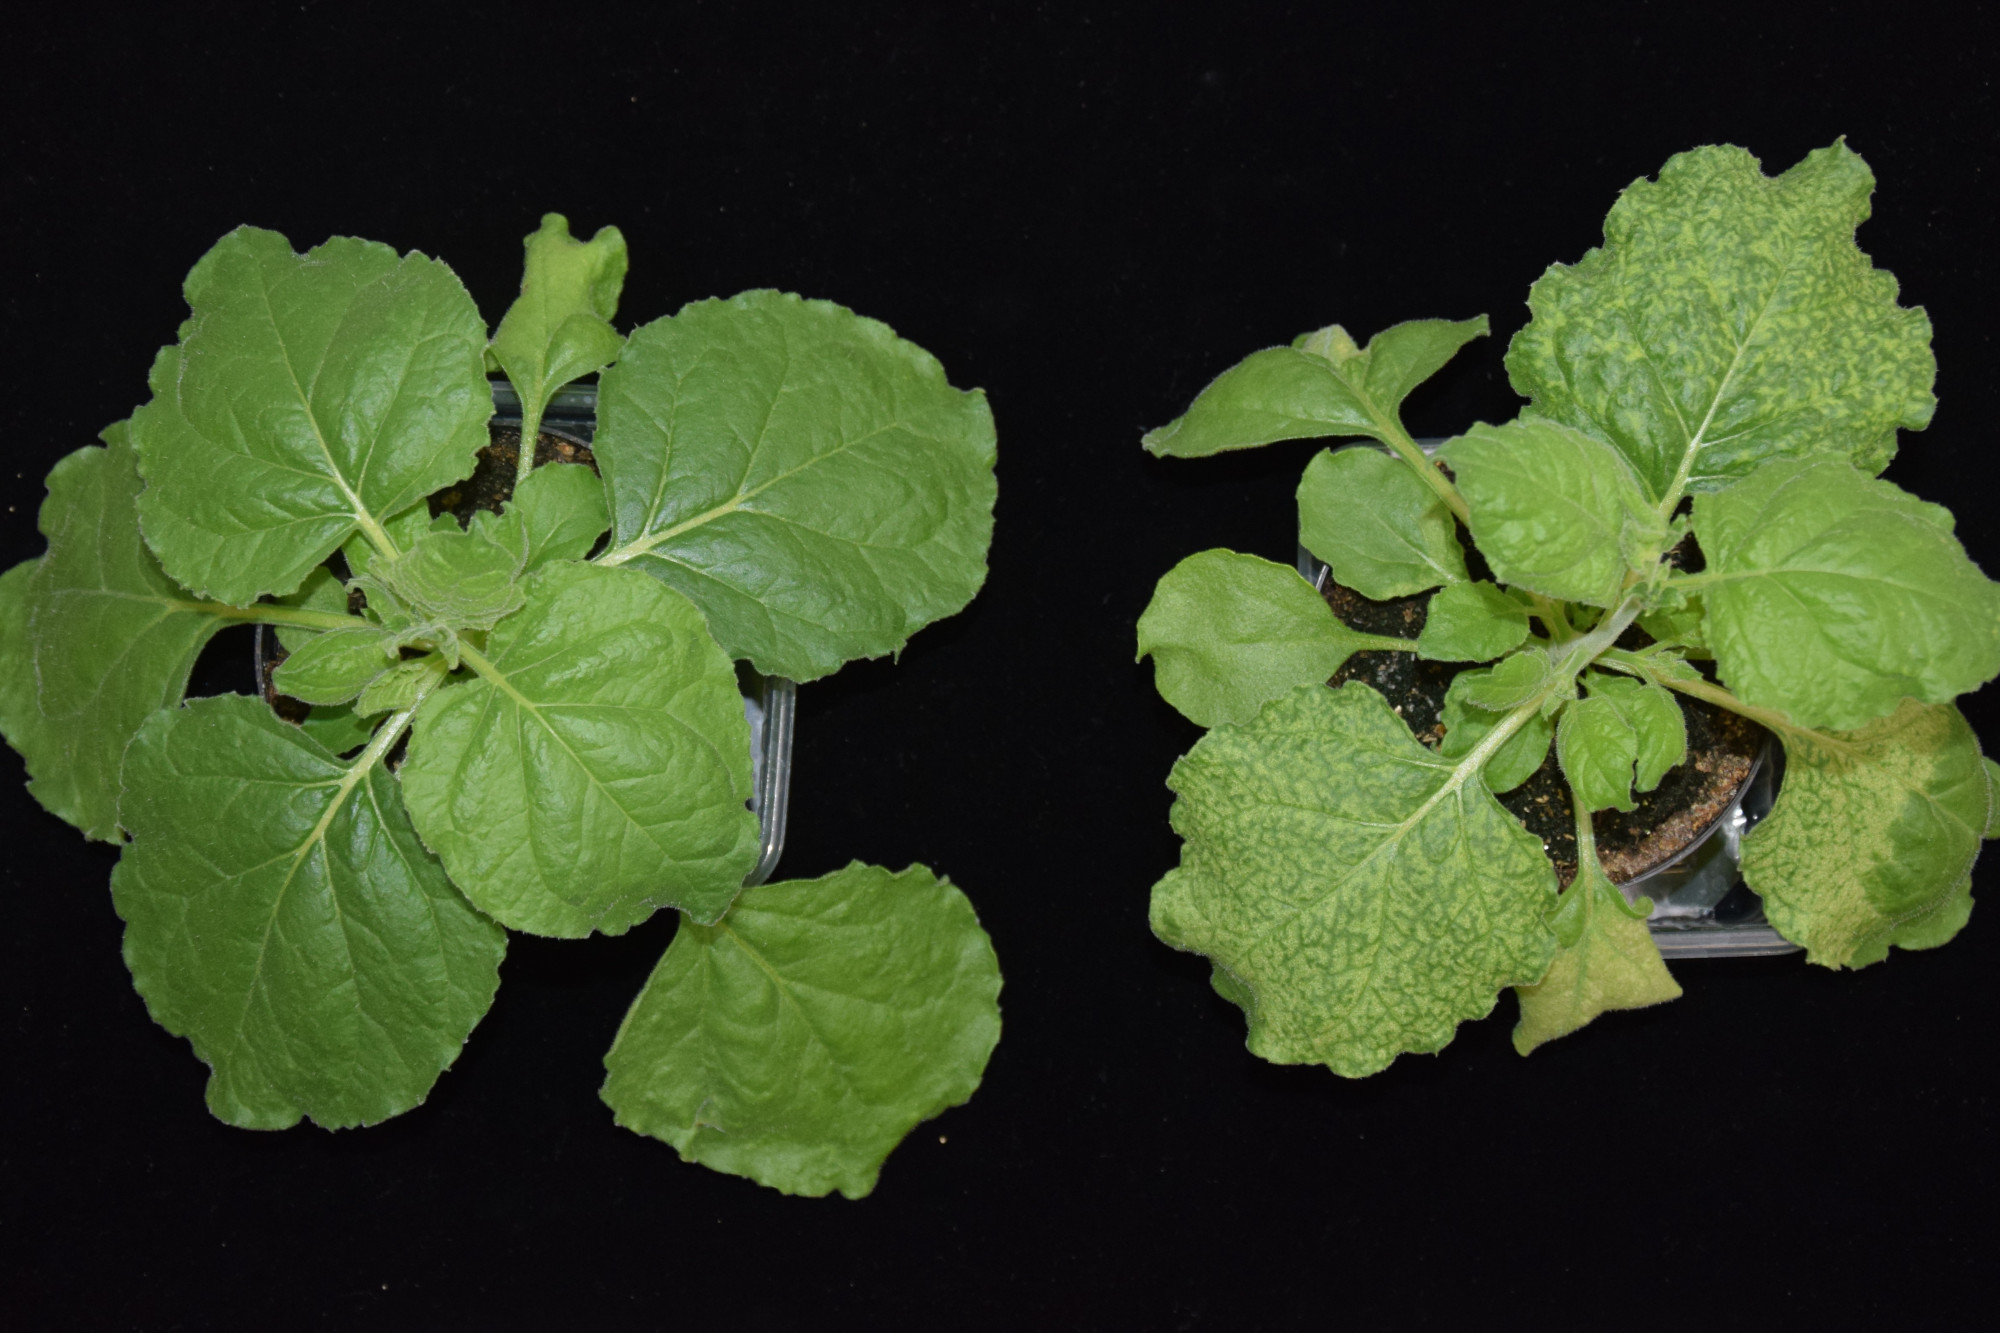 Über Agrobakterium tumefaciens-vermittelte Blattinokulation werden virale cDNA Volllängenklone in die Testpflanzen gebracht. In diesem Beispiel wurden Klone der Virusgenome des TuYV und des BtMV co-infiltriert. Auf der linken Seite ist eine nicht-infizierte Kontrollpflanze gezeigt. Auf der rechten Bildseite ist eine Pflanze, deren Blätter deutliche mosaikartige Symptome, sowie Aufhellungen aufweisen. Durch die Fluoreszenzgen-Markierung mit GFP und mRFP der Klone ist es zudem möglich, die Viruslokalisation beider Viren mithilfe von Fluoreszenz- bzw. konfokaler Laserscanning Mikroskopie im Blattgewebe zu untersuchen.